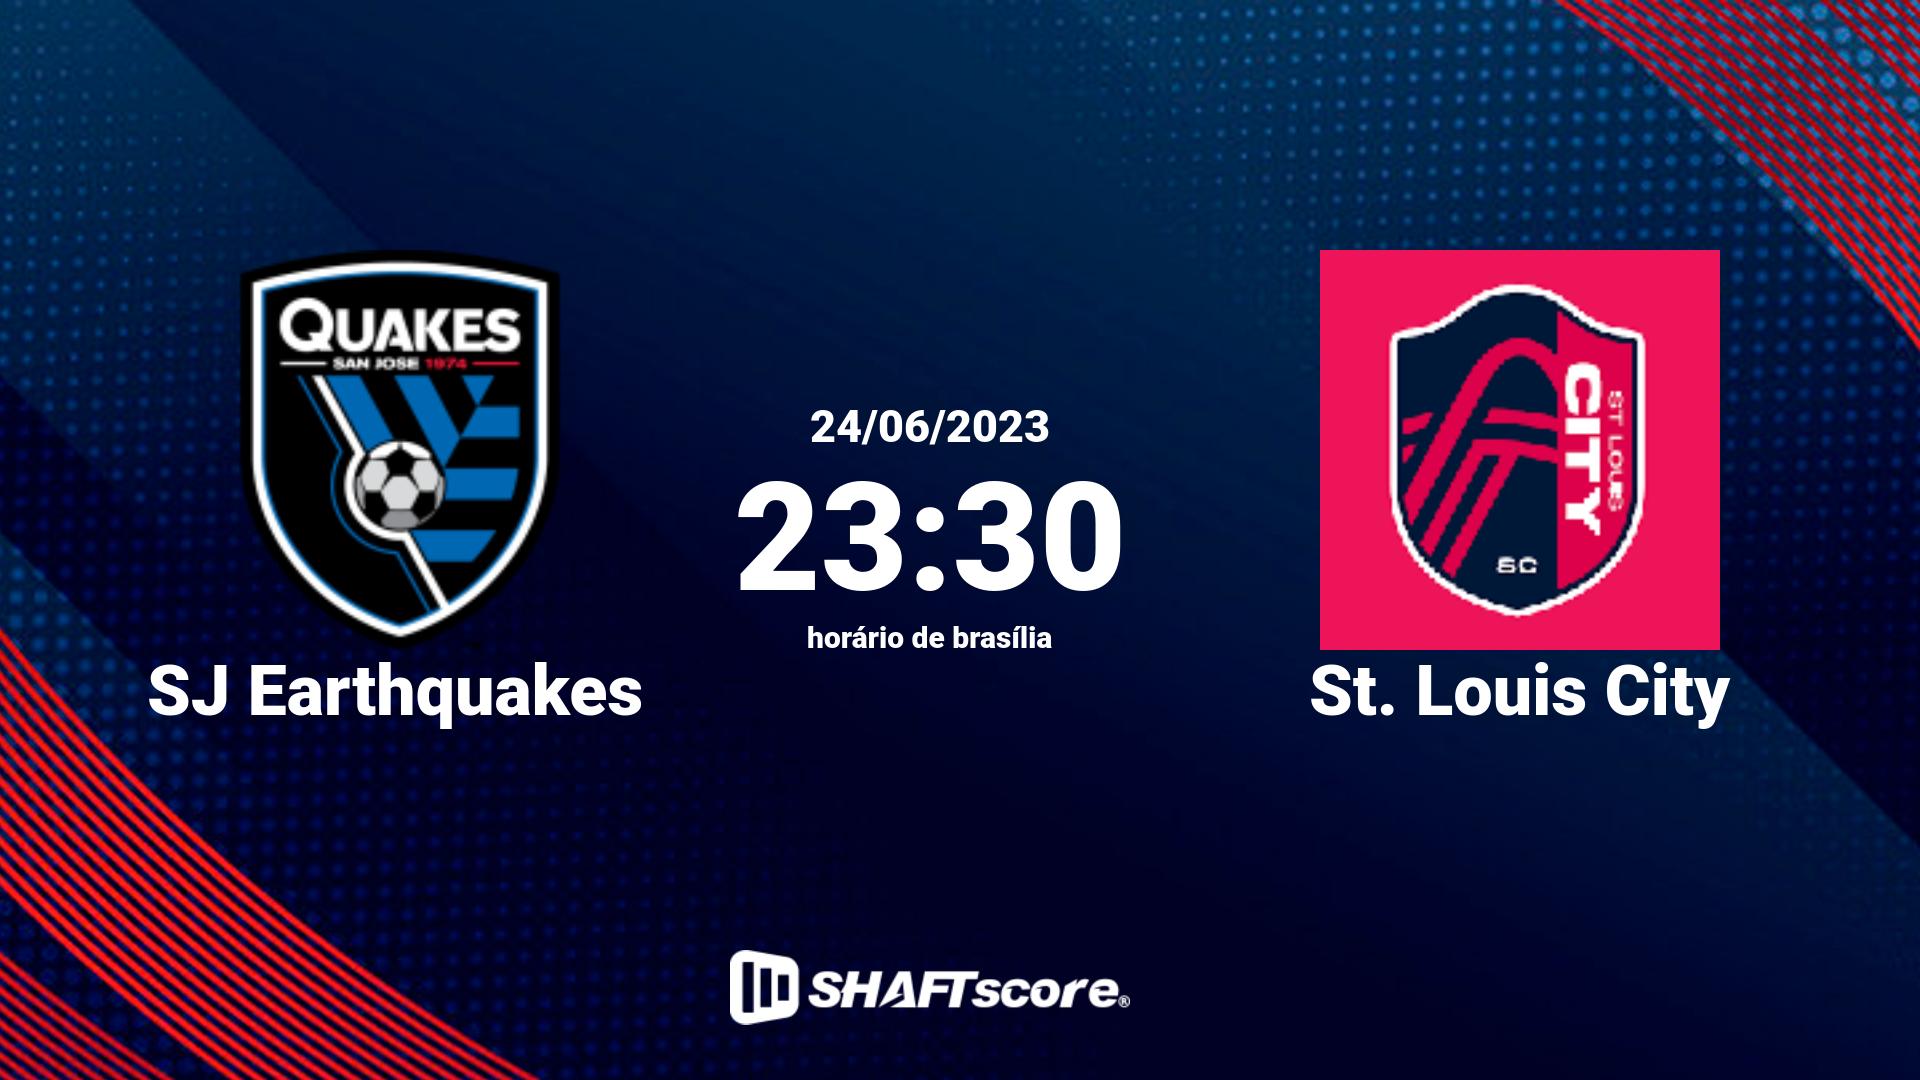 Estatísticas do jogo SJ Earthquakes vs St. Louis City 24.06 23:30